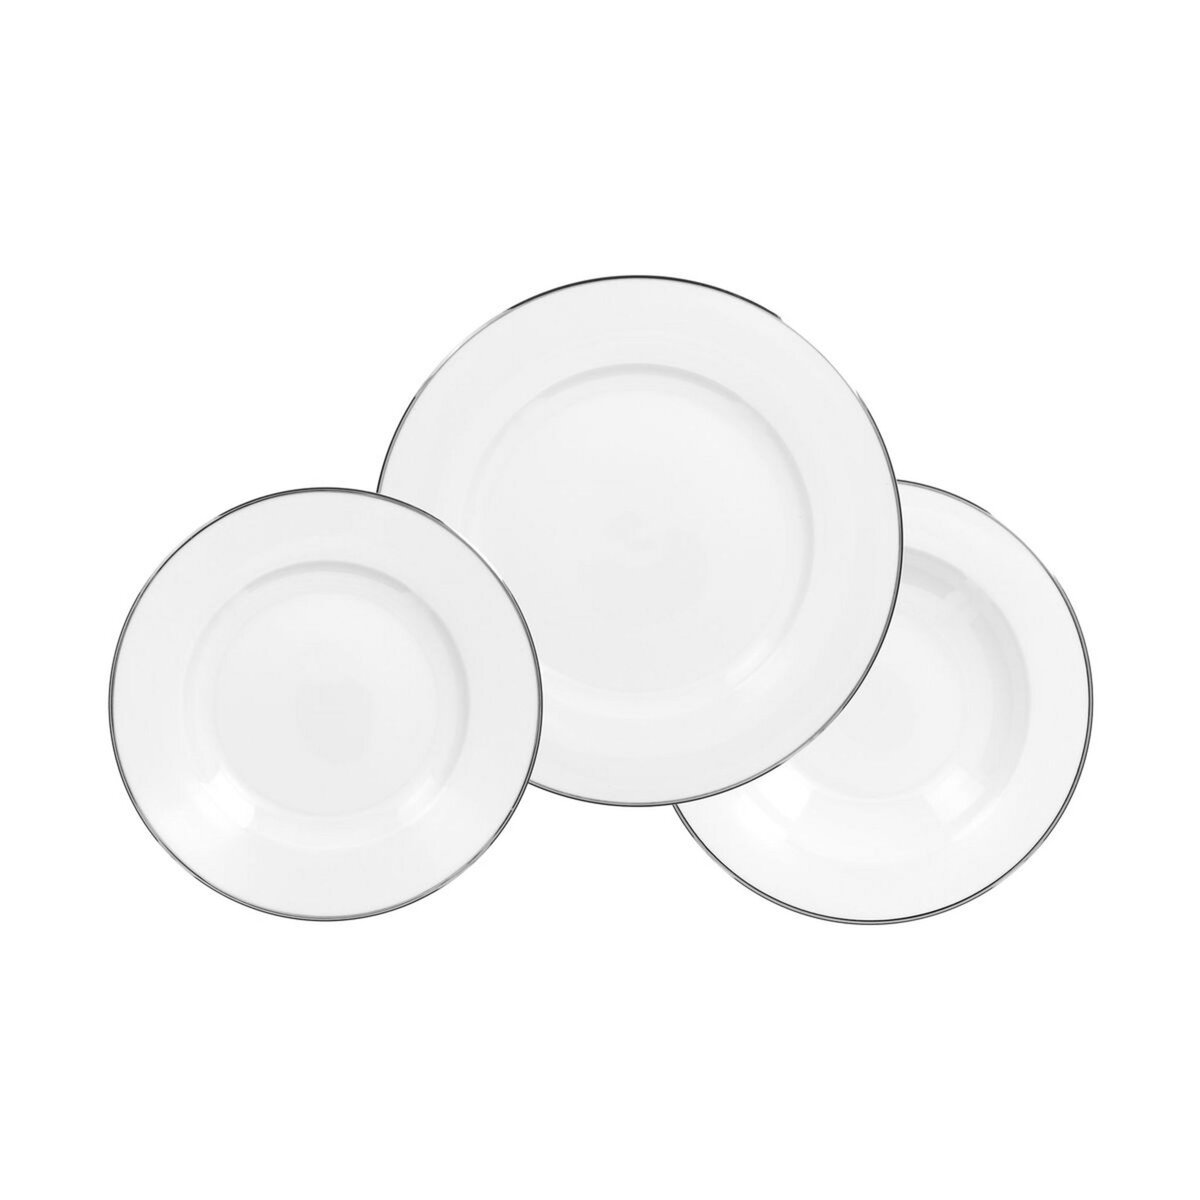 Service d'assiettes porcelaine 18 pièces blanc filet argent